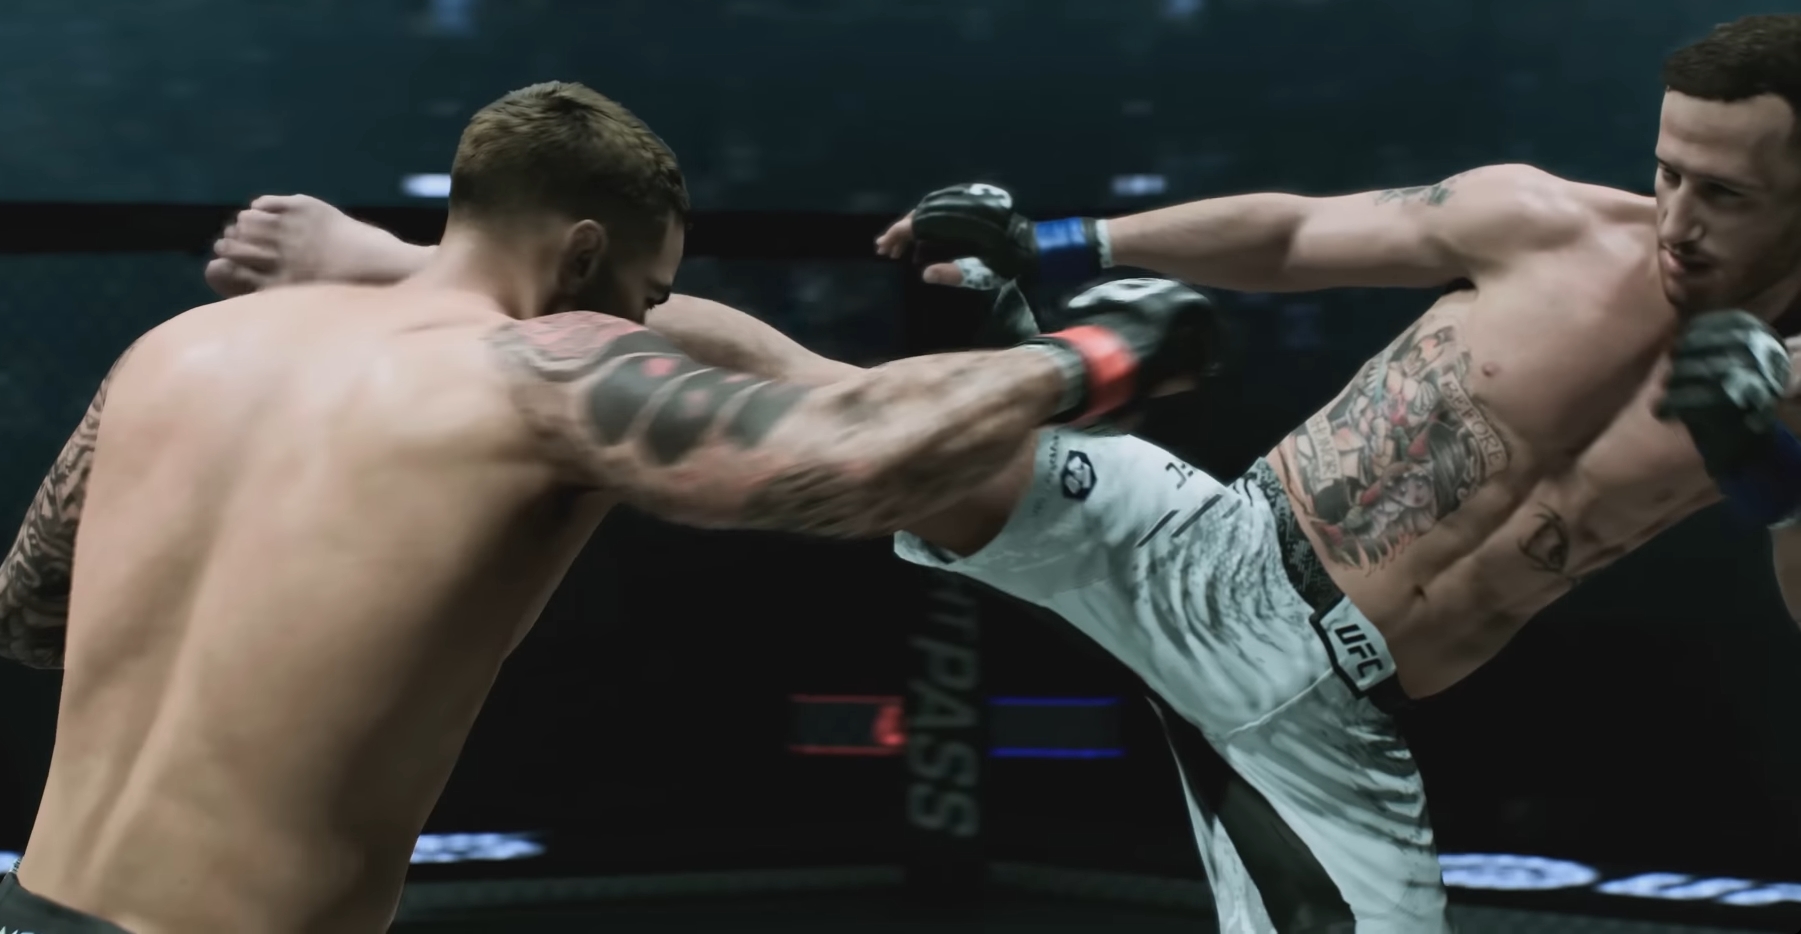 Повреждения лица, механика рефери и борьба на полу — новые детали о UFC 5 в первом геймплейном трейлере